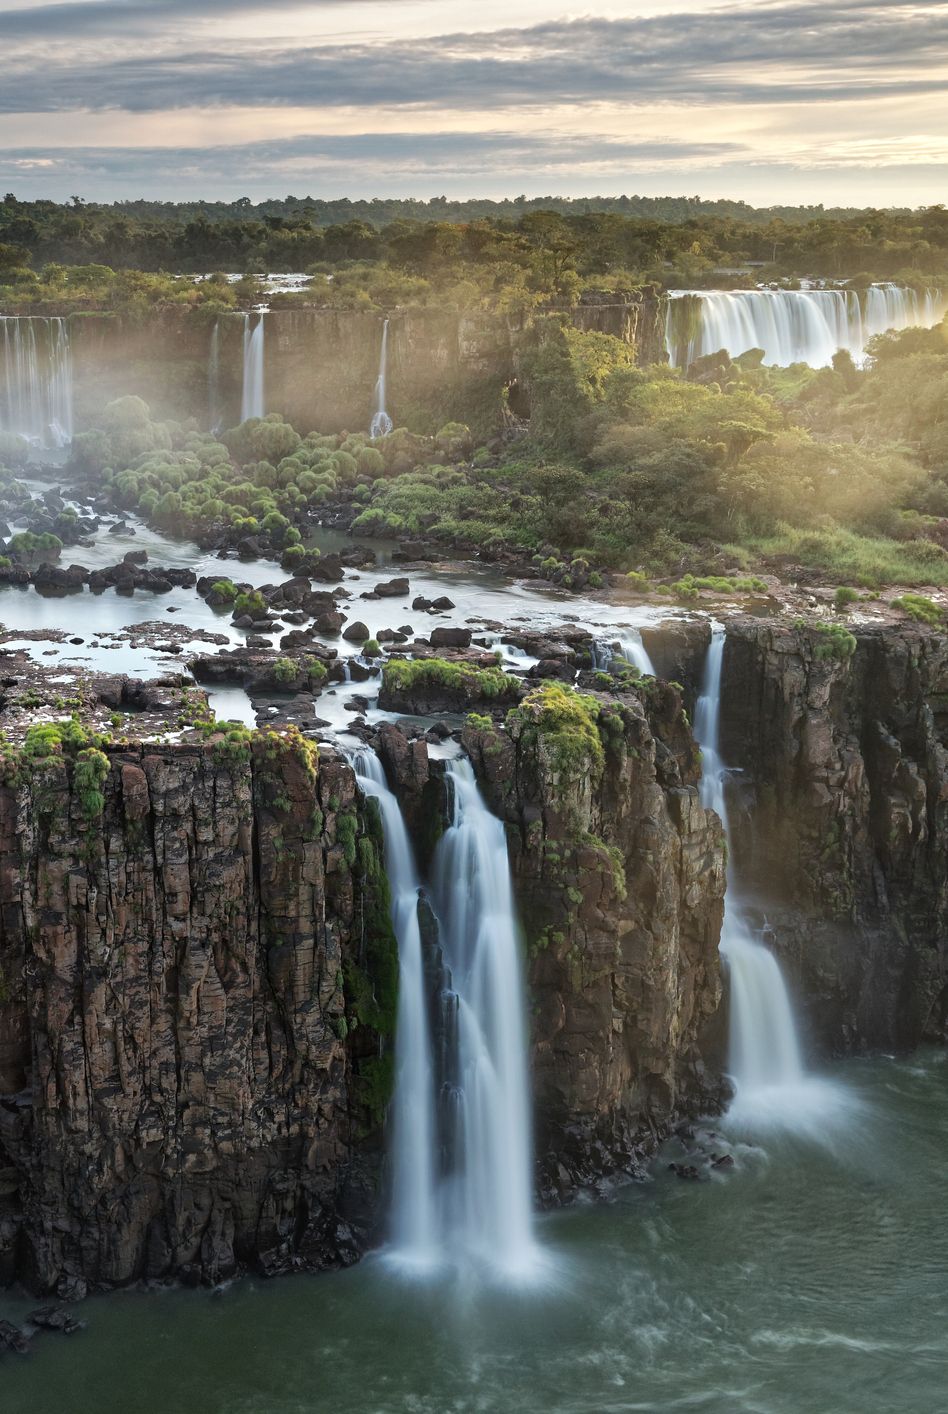 Thác Igazu, Brazil Không có gì ngạc nhiên khi đây được mệnh danh là một trong bảy kỳ quan thiên nhiên mới của thế giới — Thác Igazu là hệ thống thác nước lớn nhất thế giới , vì vậy chắc chắn không thể thiếu các điểm tham quan ở đây. Với 275 lần rơi khác nhau, thật đáng kinh ngạc từ mọi vị trí thuận lợi.